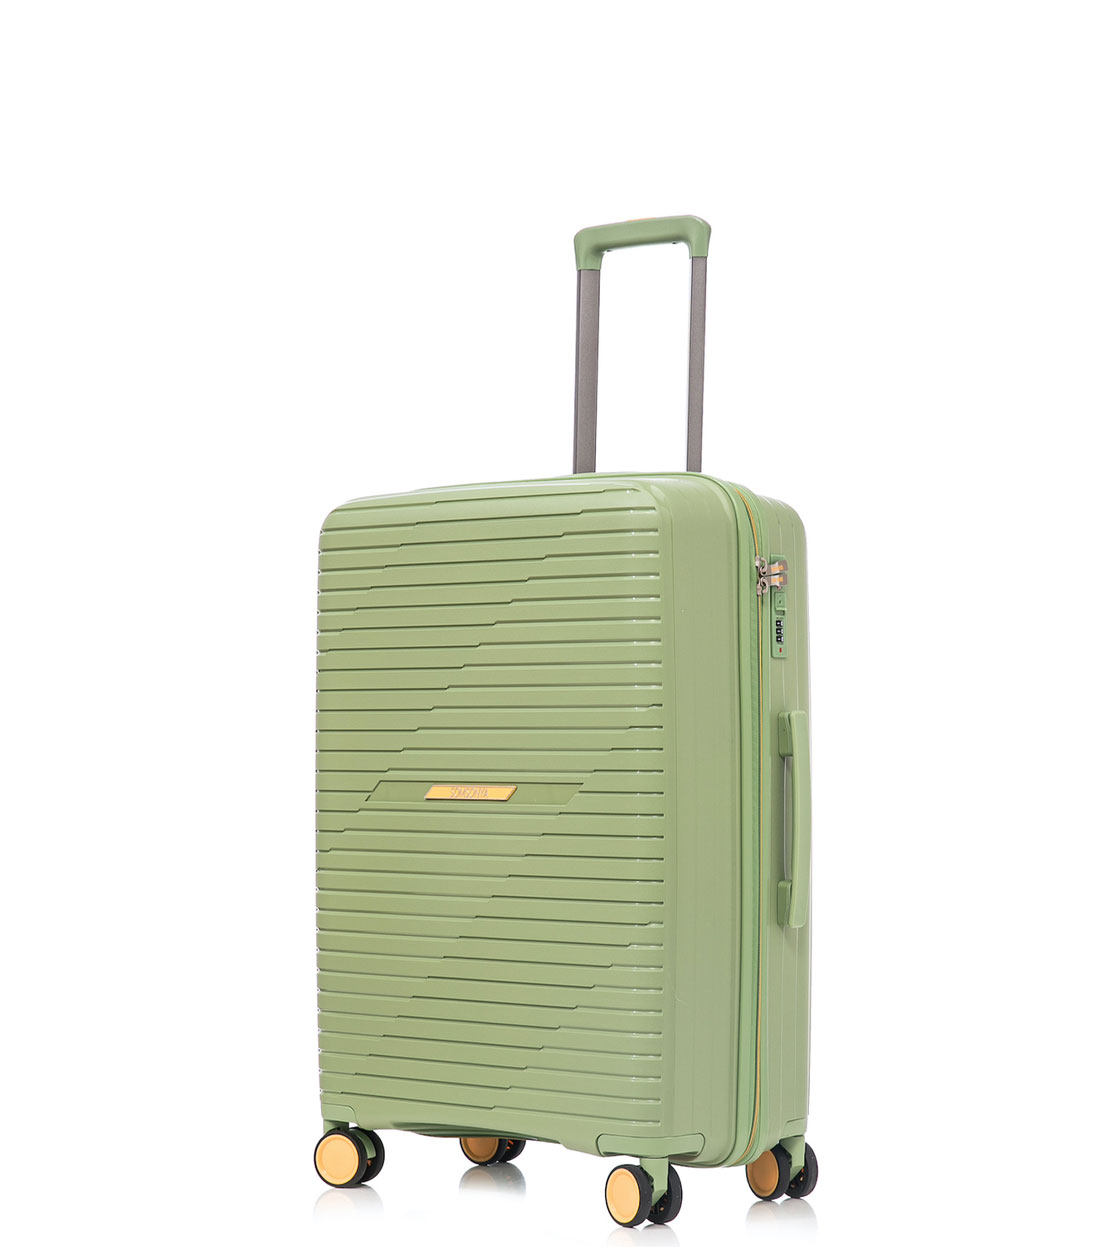 Малый чемодан Somsonya PP Singapore S (56 см) Pistachio